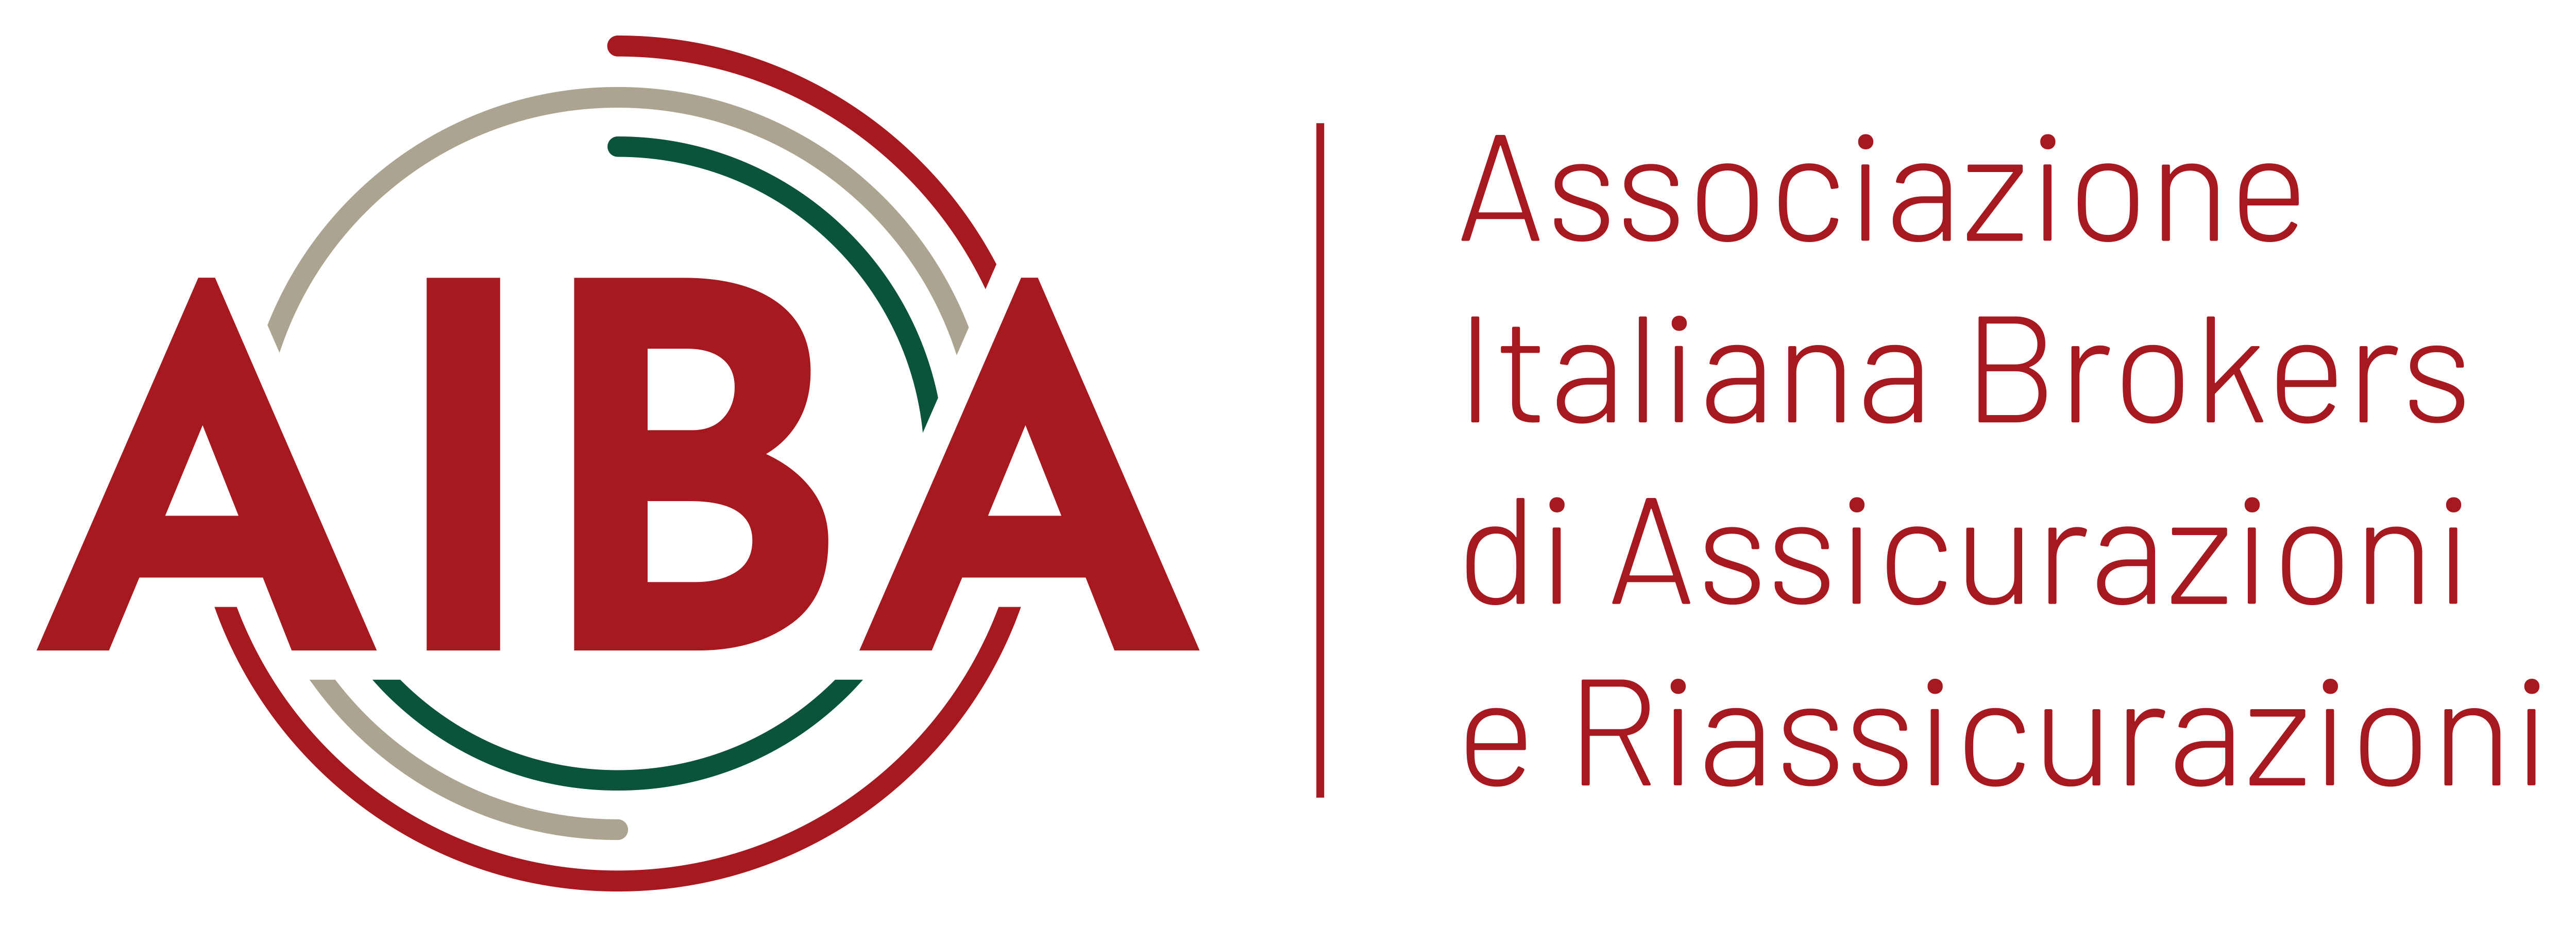 Associazione Italiana Brokers di Assicurazioni